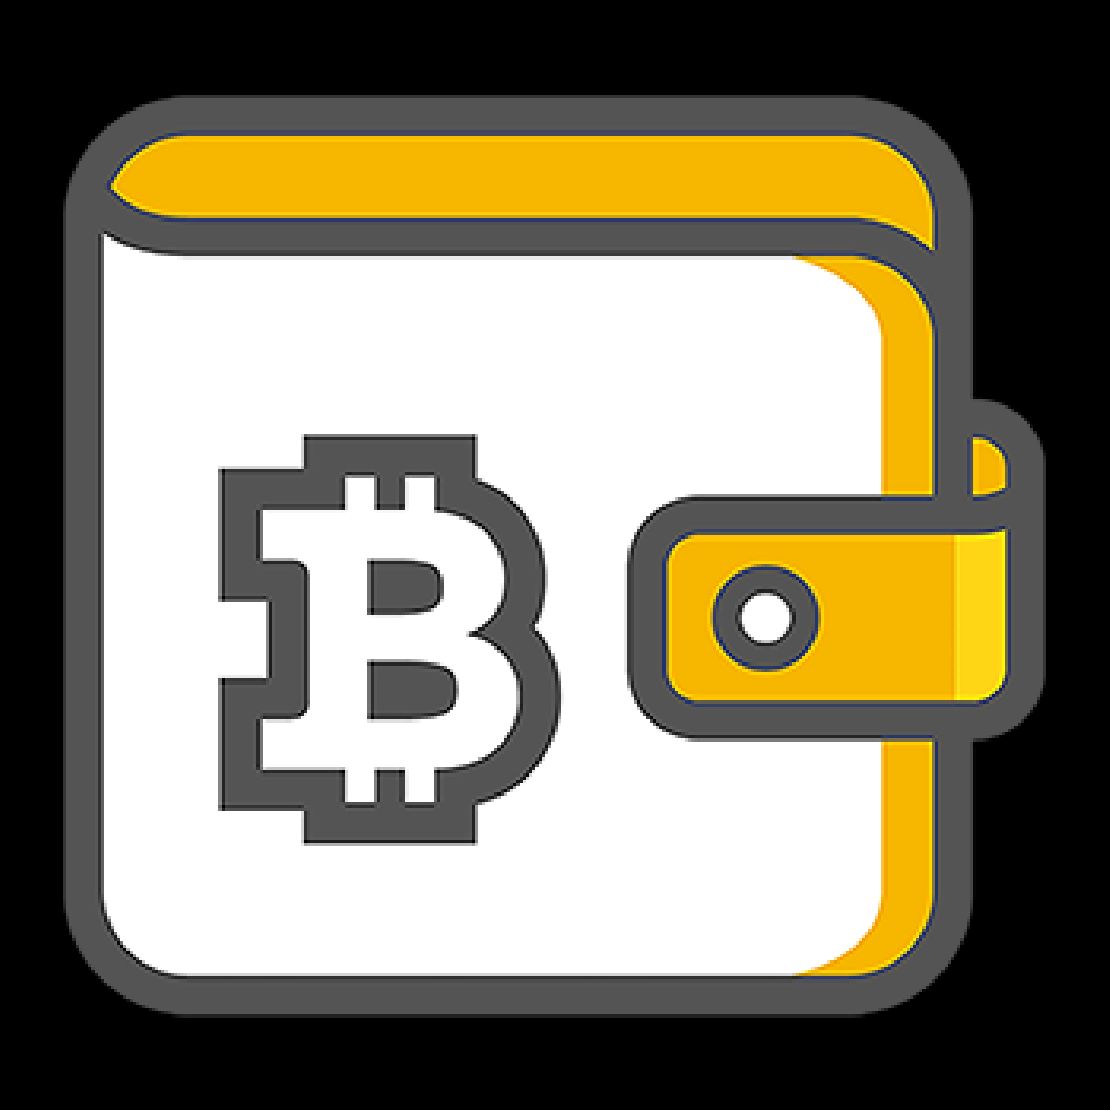 Bitcoin tranzakció - A Bitcoin utalás folyamata a küldéstől a fogadásig